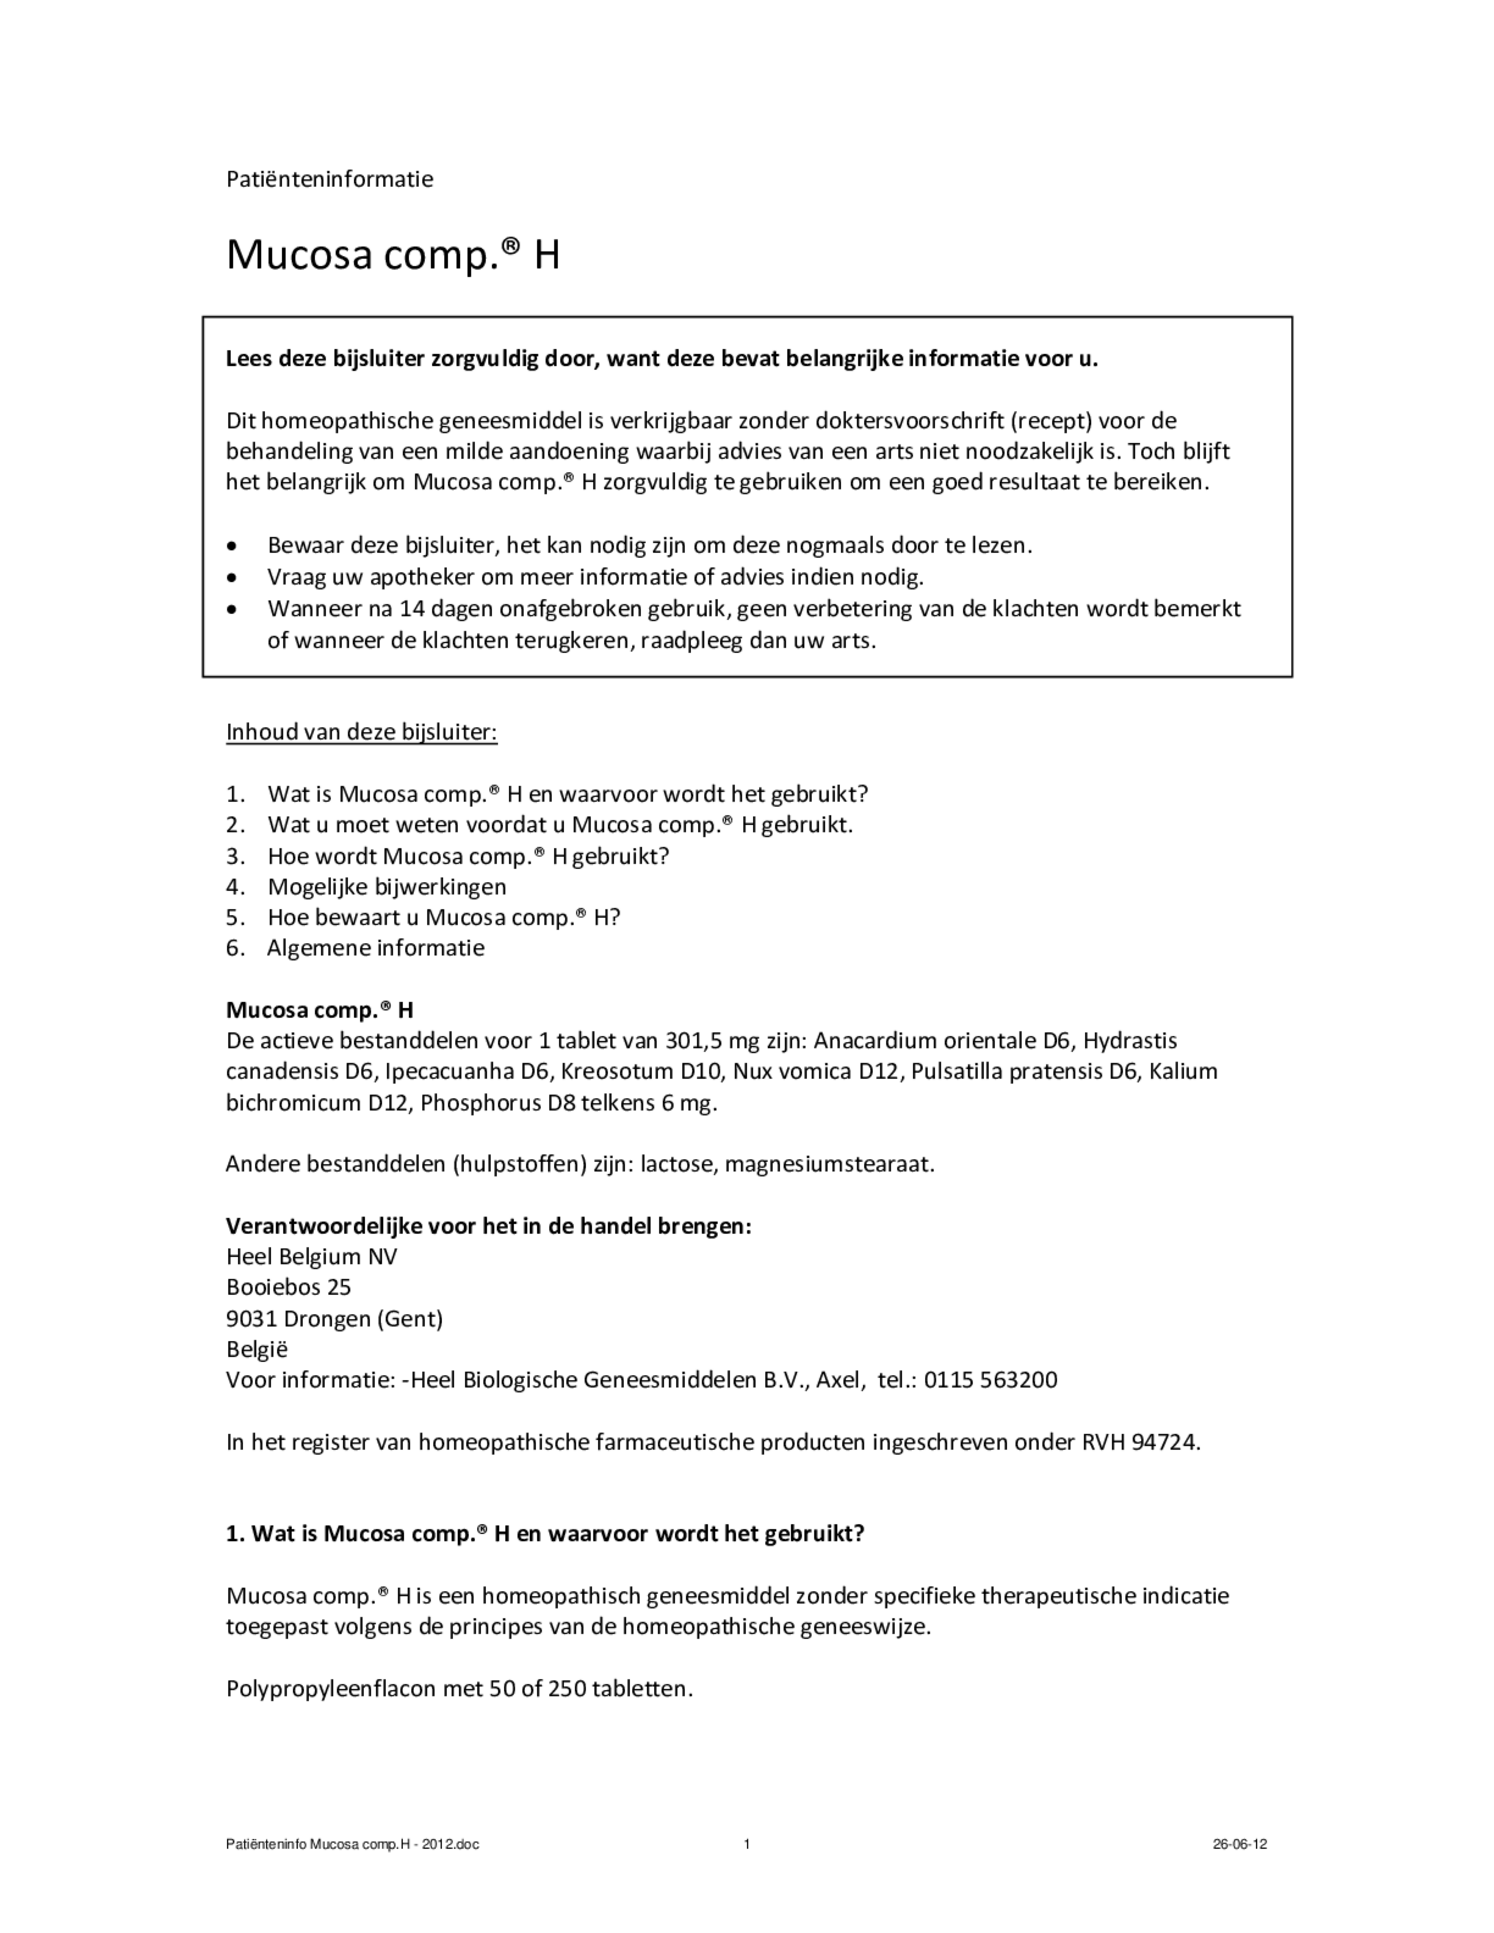 Mucosa Compositum H Tabletten afbeelding van document #1, bijsluiter